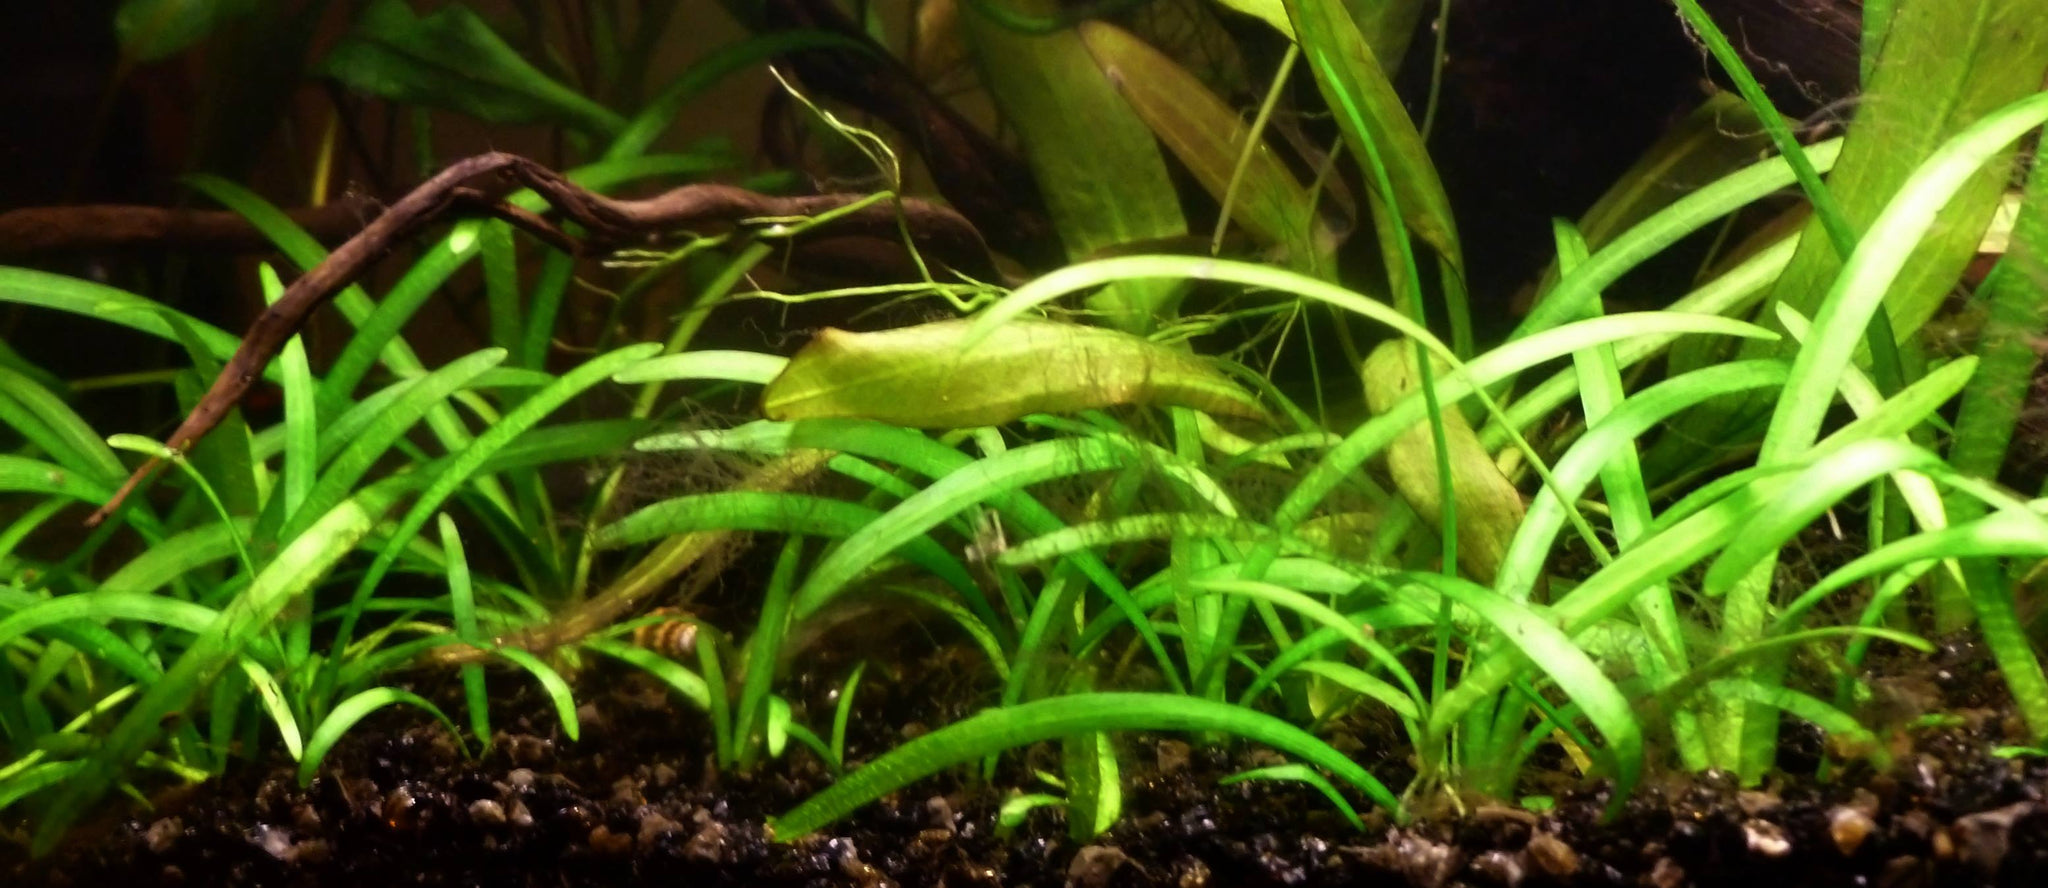 Sagittaria for ponds - Aquatic Plants - Aquarium World